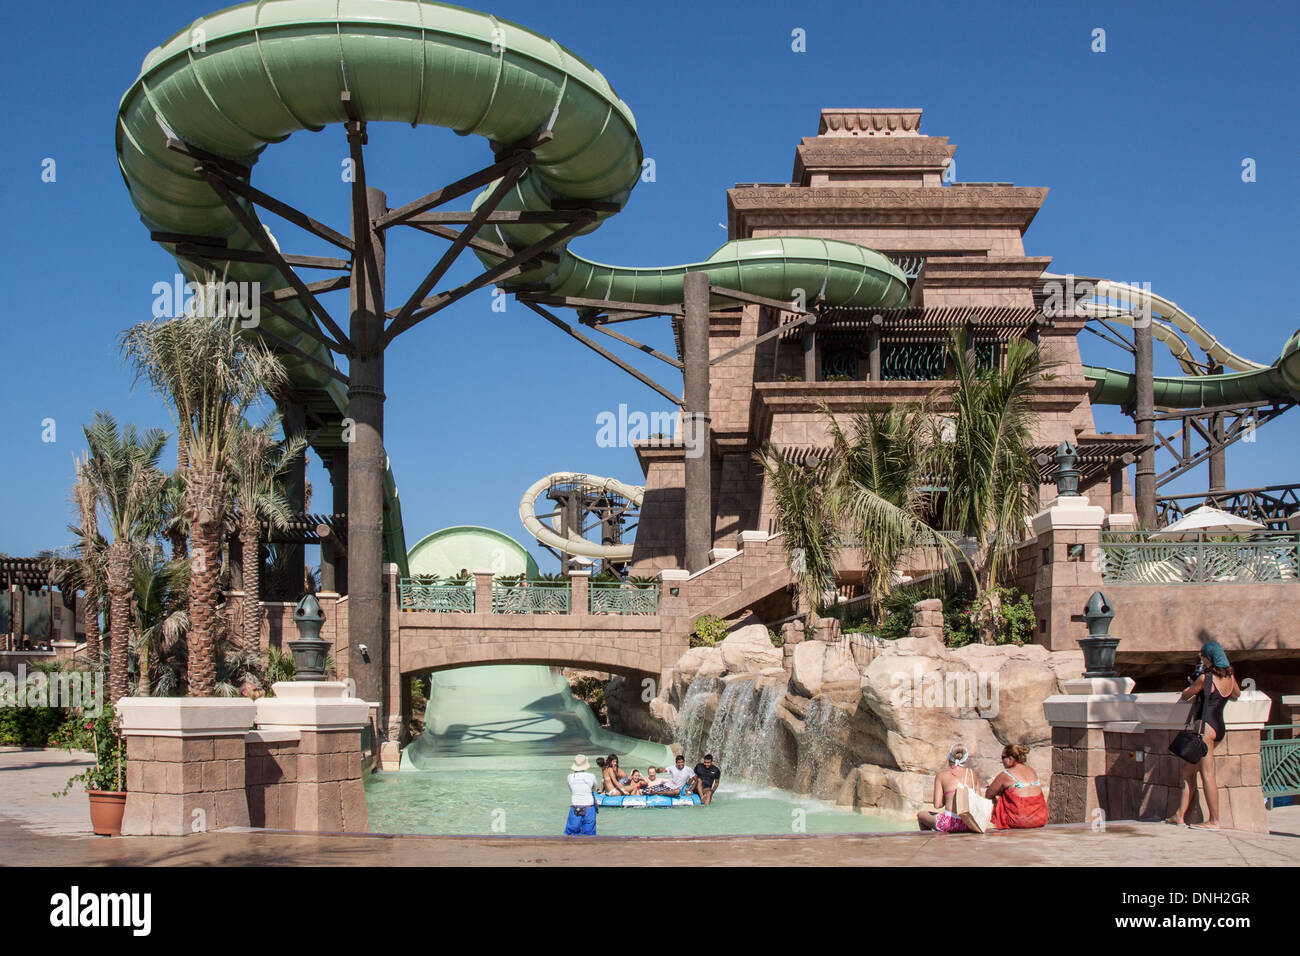 L'attrazione chiamata la torre di Poseidone nell'Aquaventure Water Park, ATLANTIS PALM complesso turistico, Palm Jumeirah, Dubai, Emirati arabi uniti, MEDIO ORIENTE Foto Stock